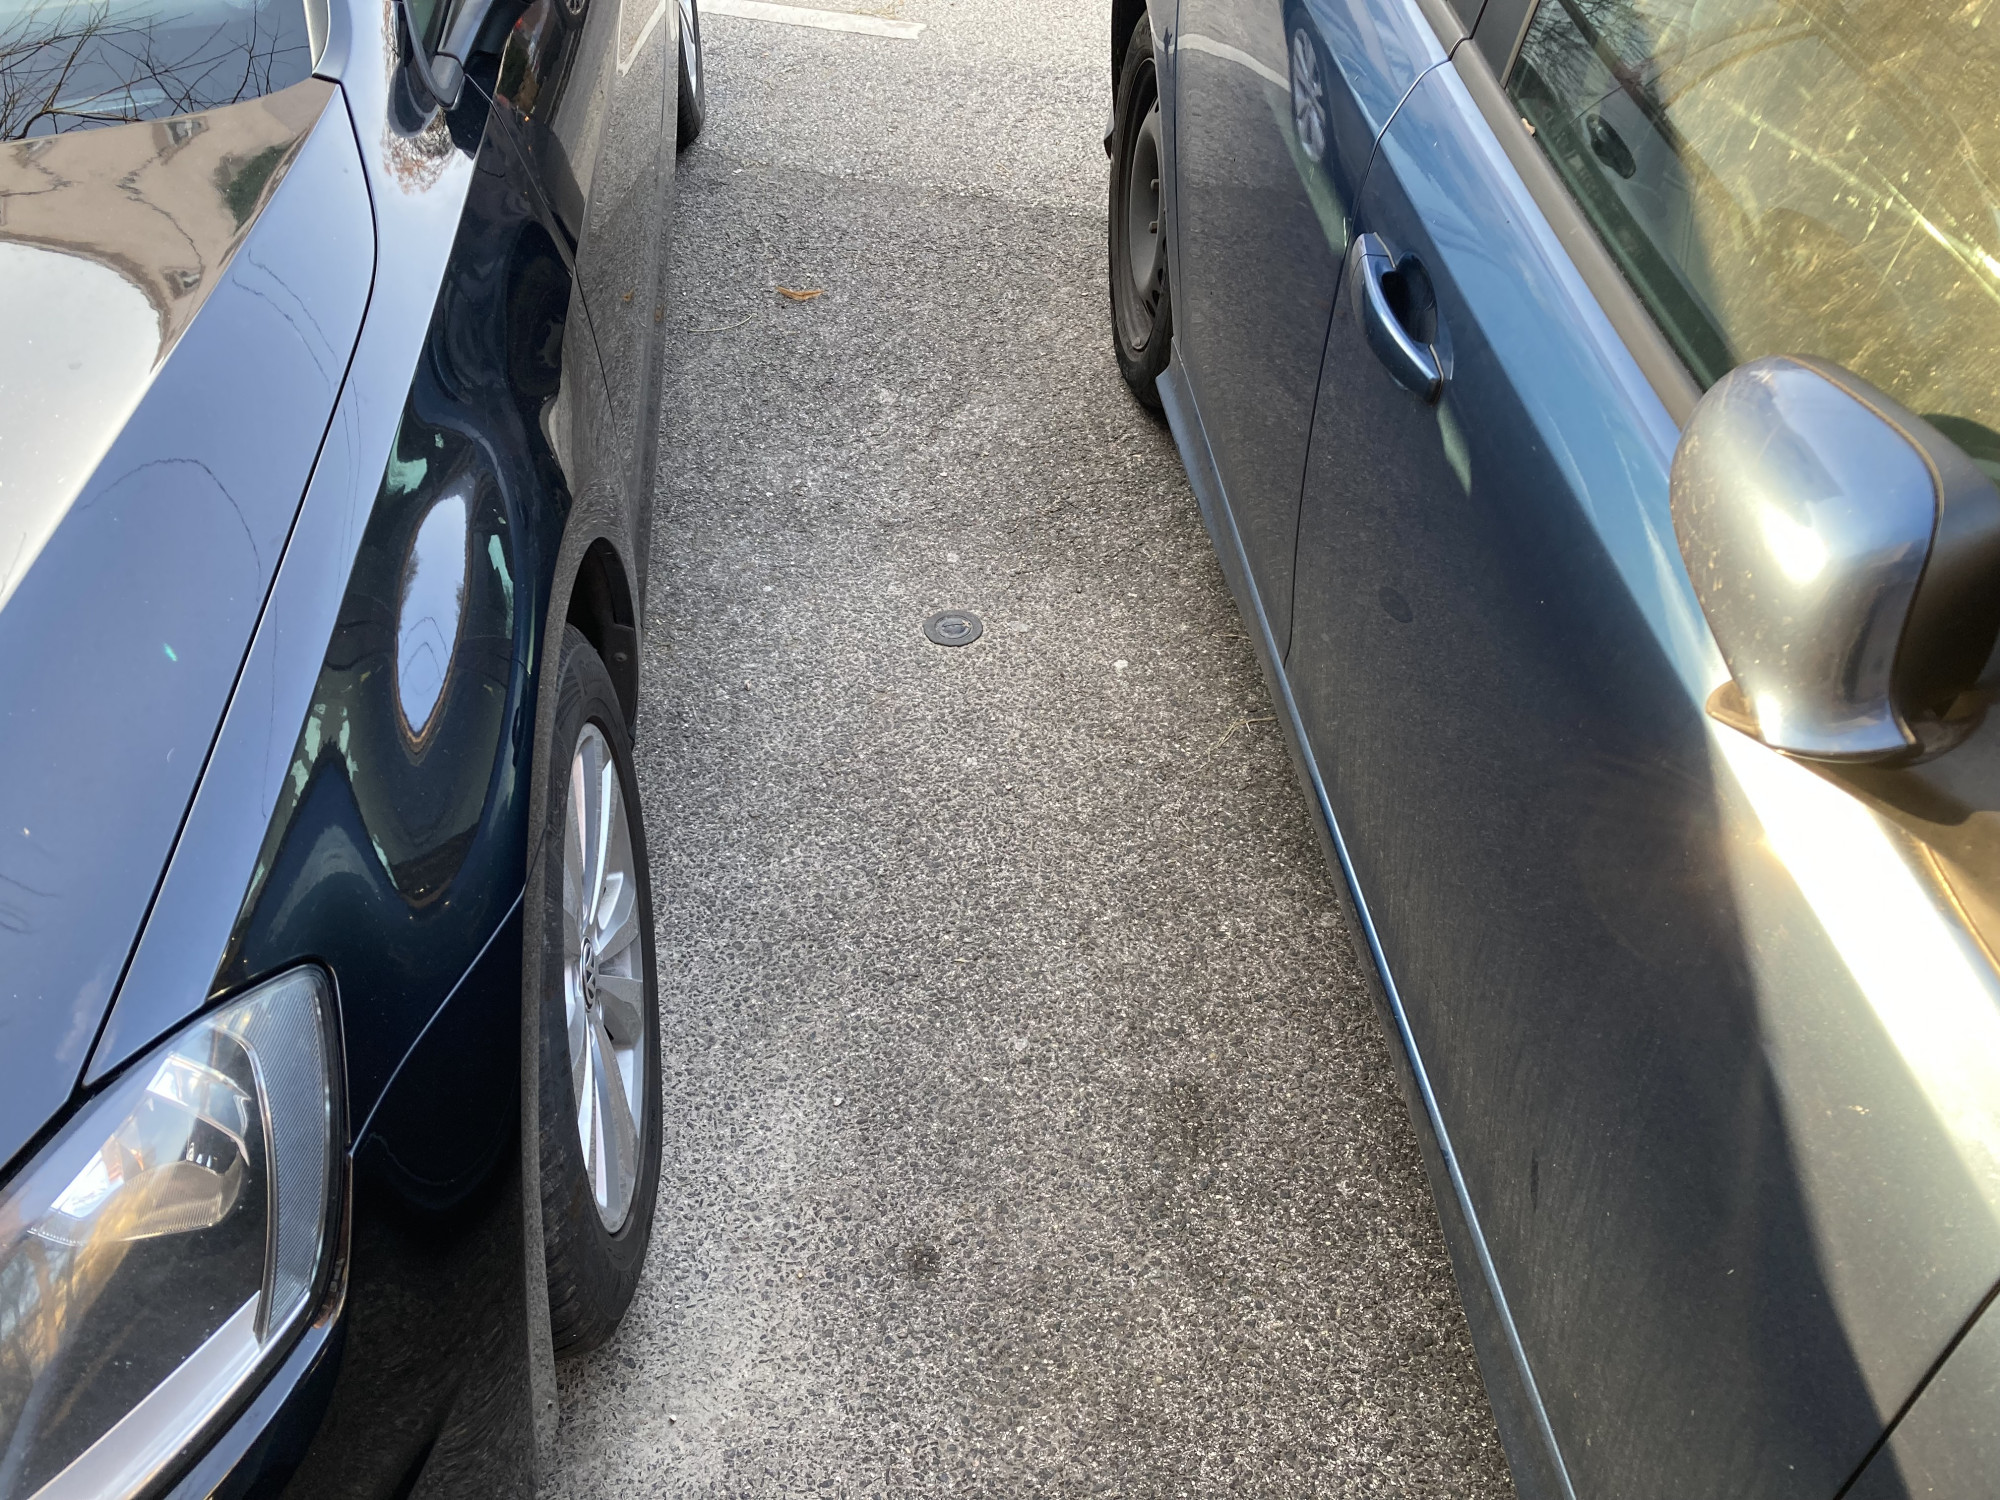 Ha két autó között van a szenzor, de nincs elég hely közöttük leparkolni egy harmadik autónak, akkor a központi adatfeldolgozó rendszer foglaltként jeleníti meg az egyébként szabadnak tetsző helyet. Sajnos a parkolóhelyek felfestésének hiányában ez elég gyakran előfordul Újlipótvárosban.